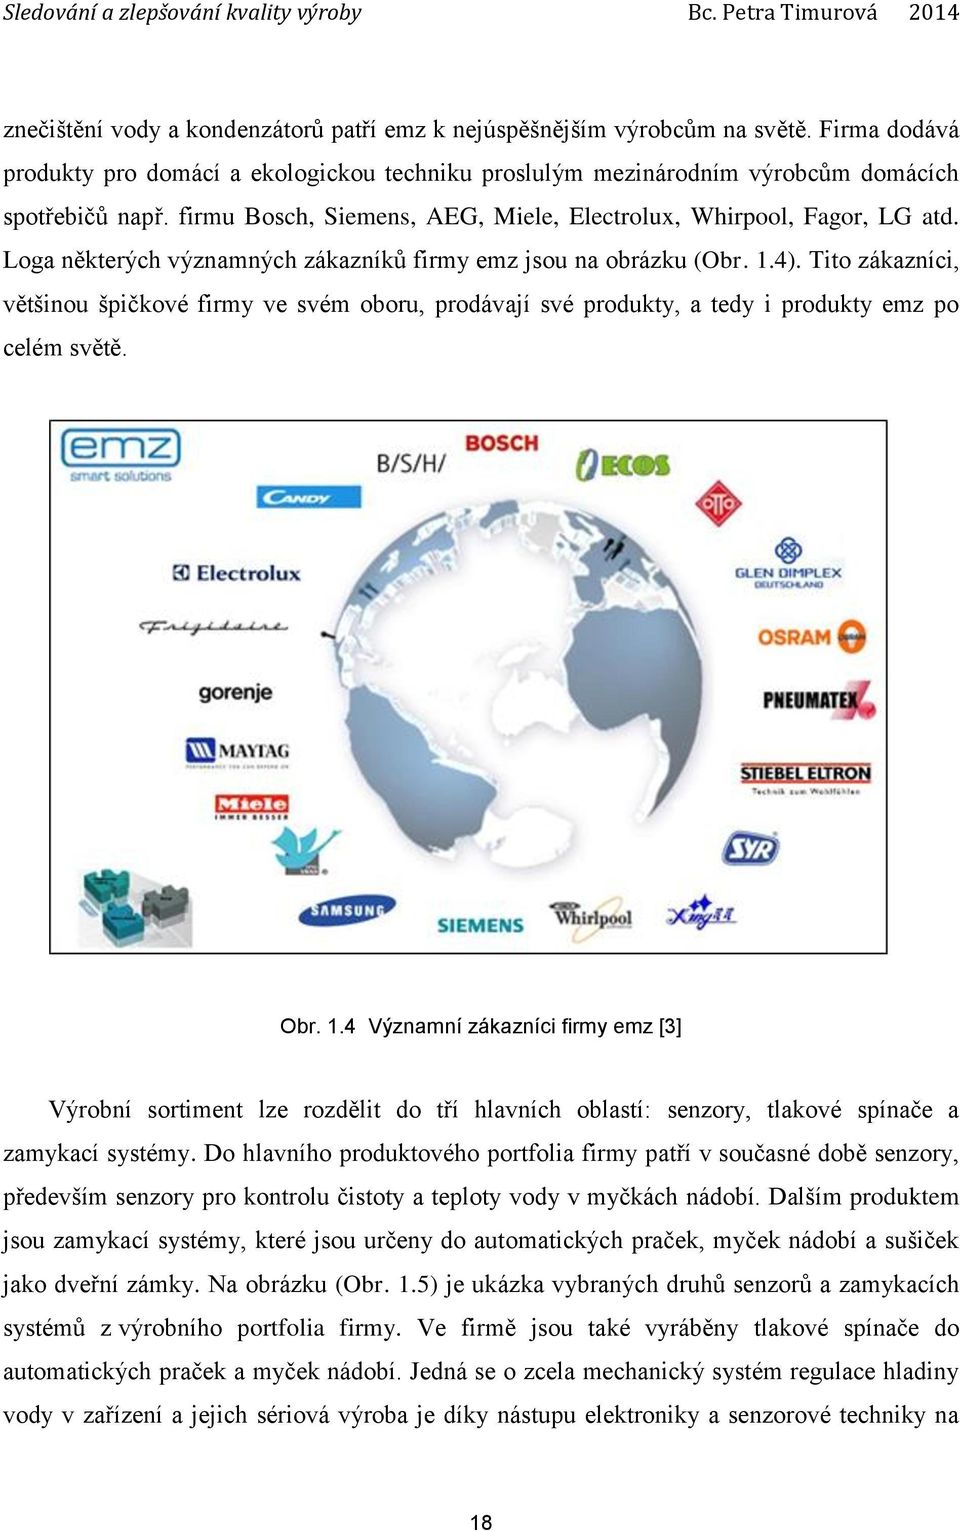 Tito zákazníci, většinou špičkové firmy ve svém oboru, prodávají své produkty, a tedy i produkty emz po celém světě. Obr. 1.